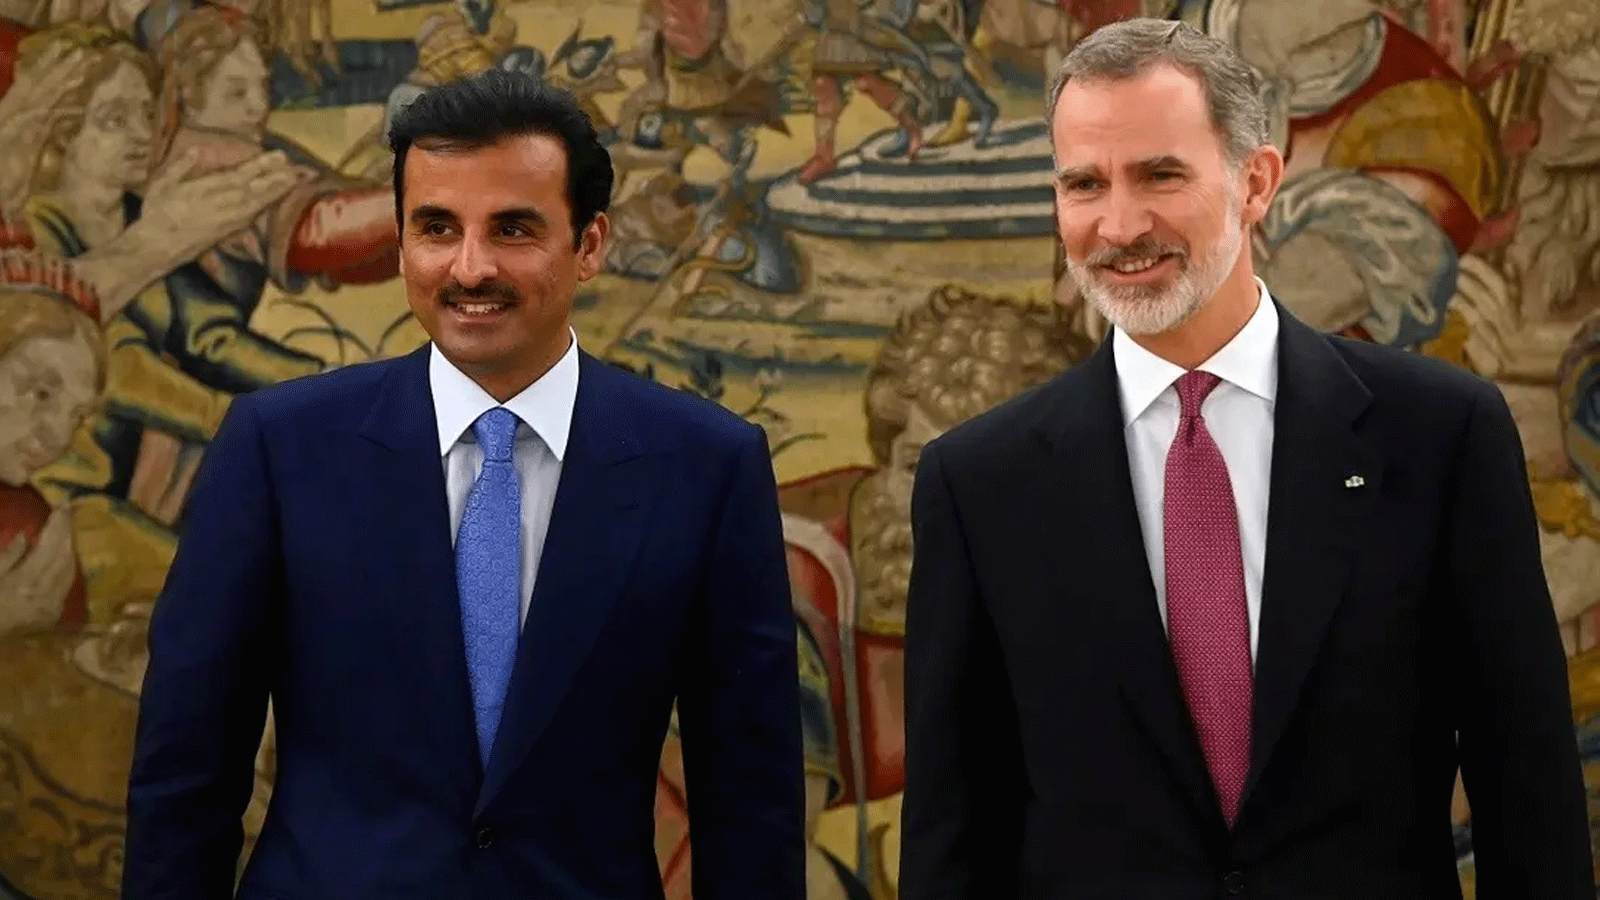 ملك إسبانيا فيليب السادس (إلى اليمين) وأمير قطر تميم بن حمد آل ثاني في صورة خلال حفل استقبال رسمي في مدريد ، في 17أيار\ مايو 2022.